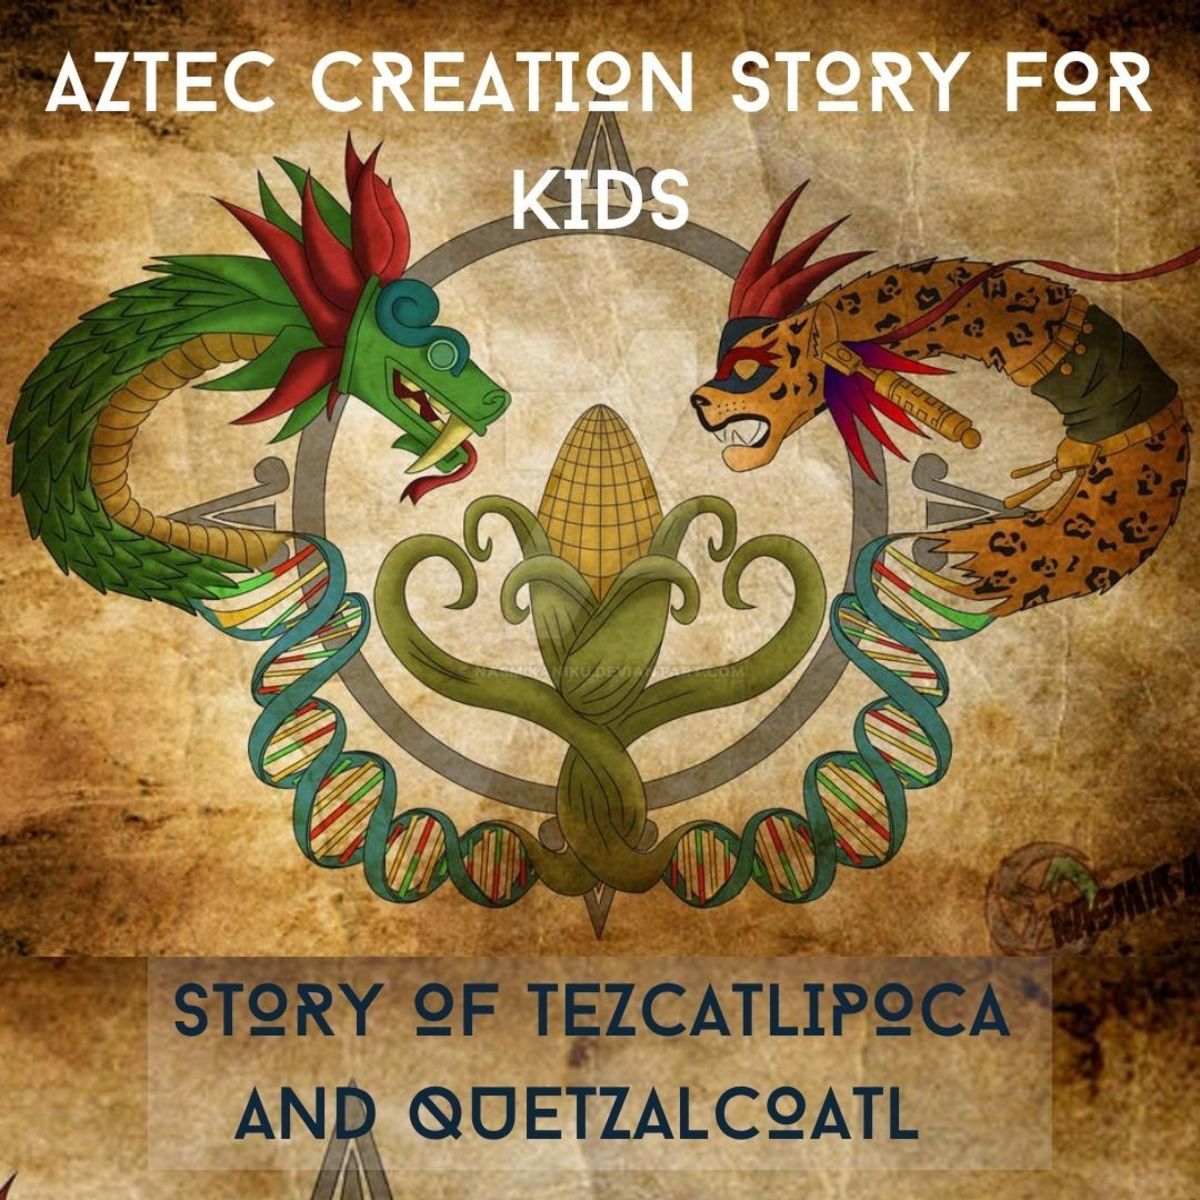 阿兹特克儿童创造故事:特兹卡特利波卡和风神鹰 - 188宝金博官网到底是哪个